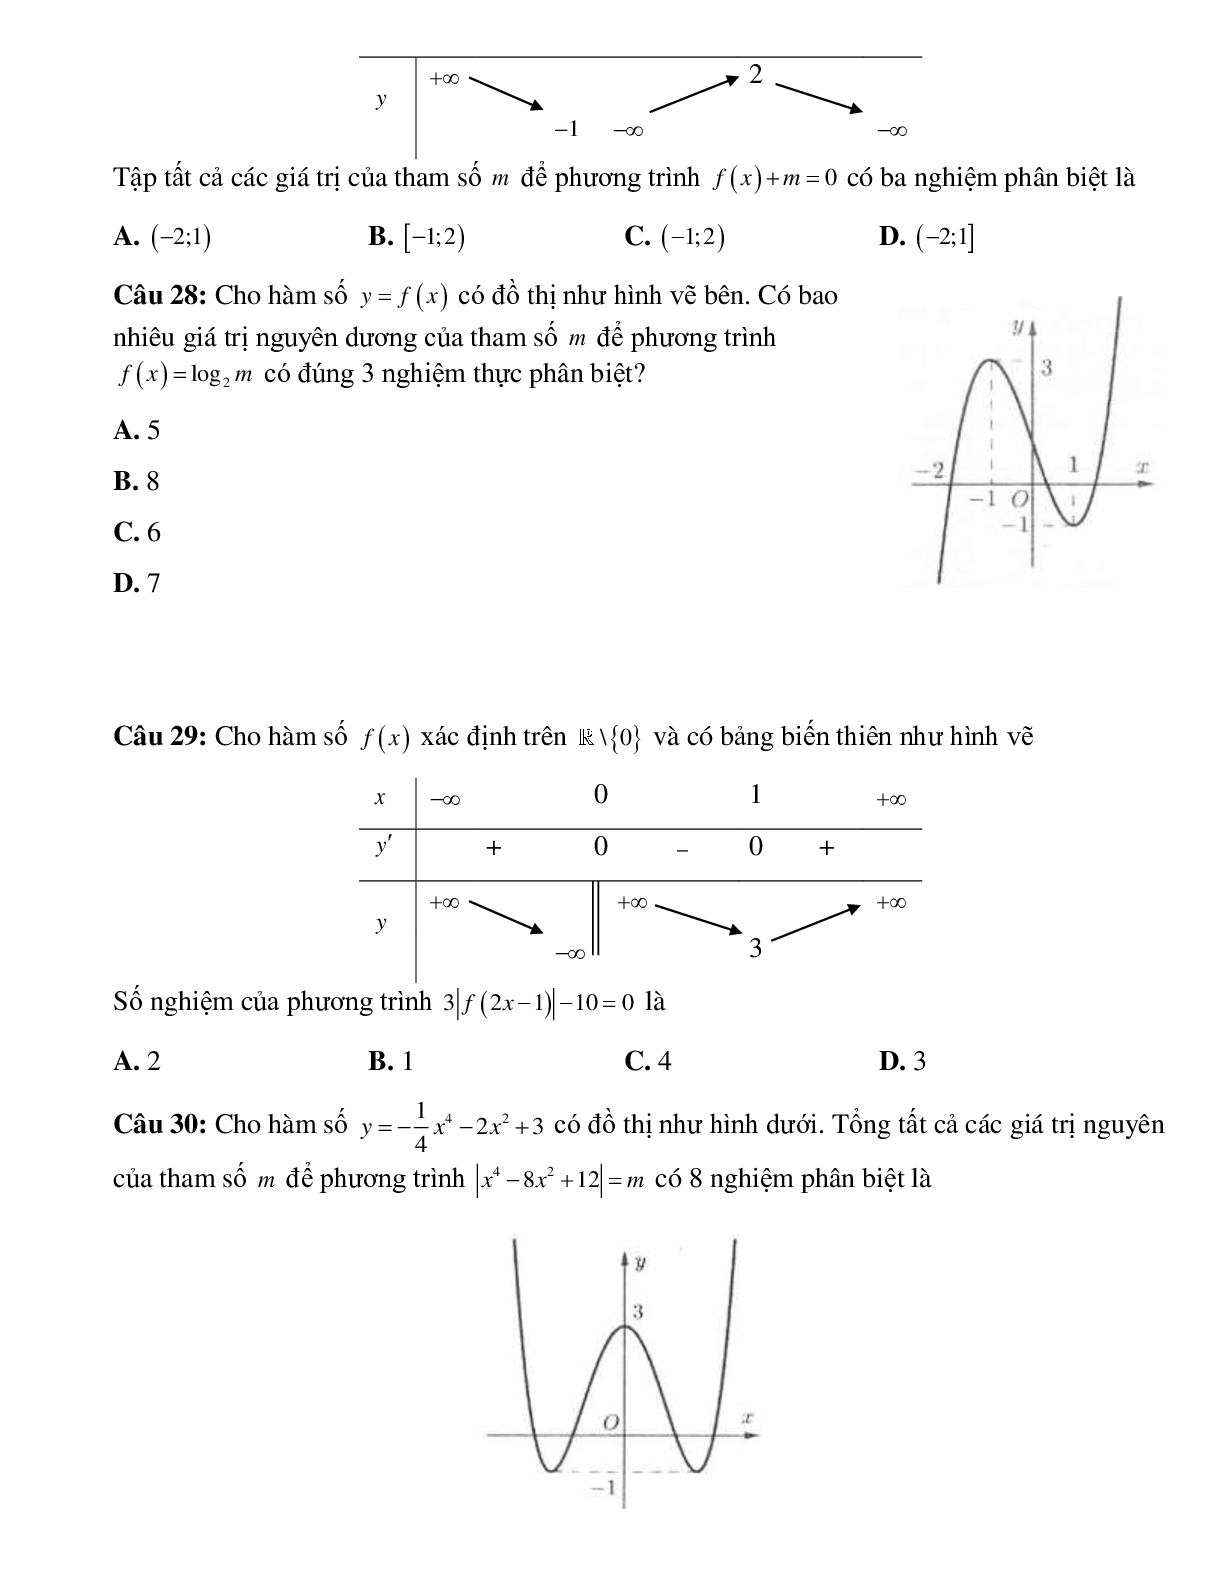 Biến luận số nghiệm của phương trình bằng đồ thị (trang 6)